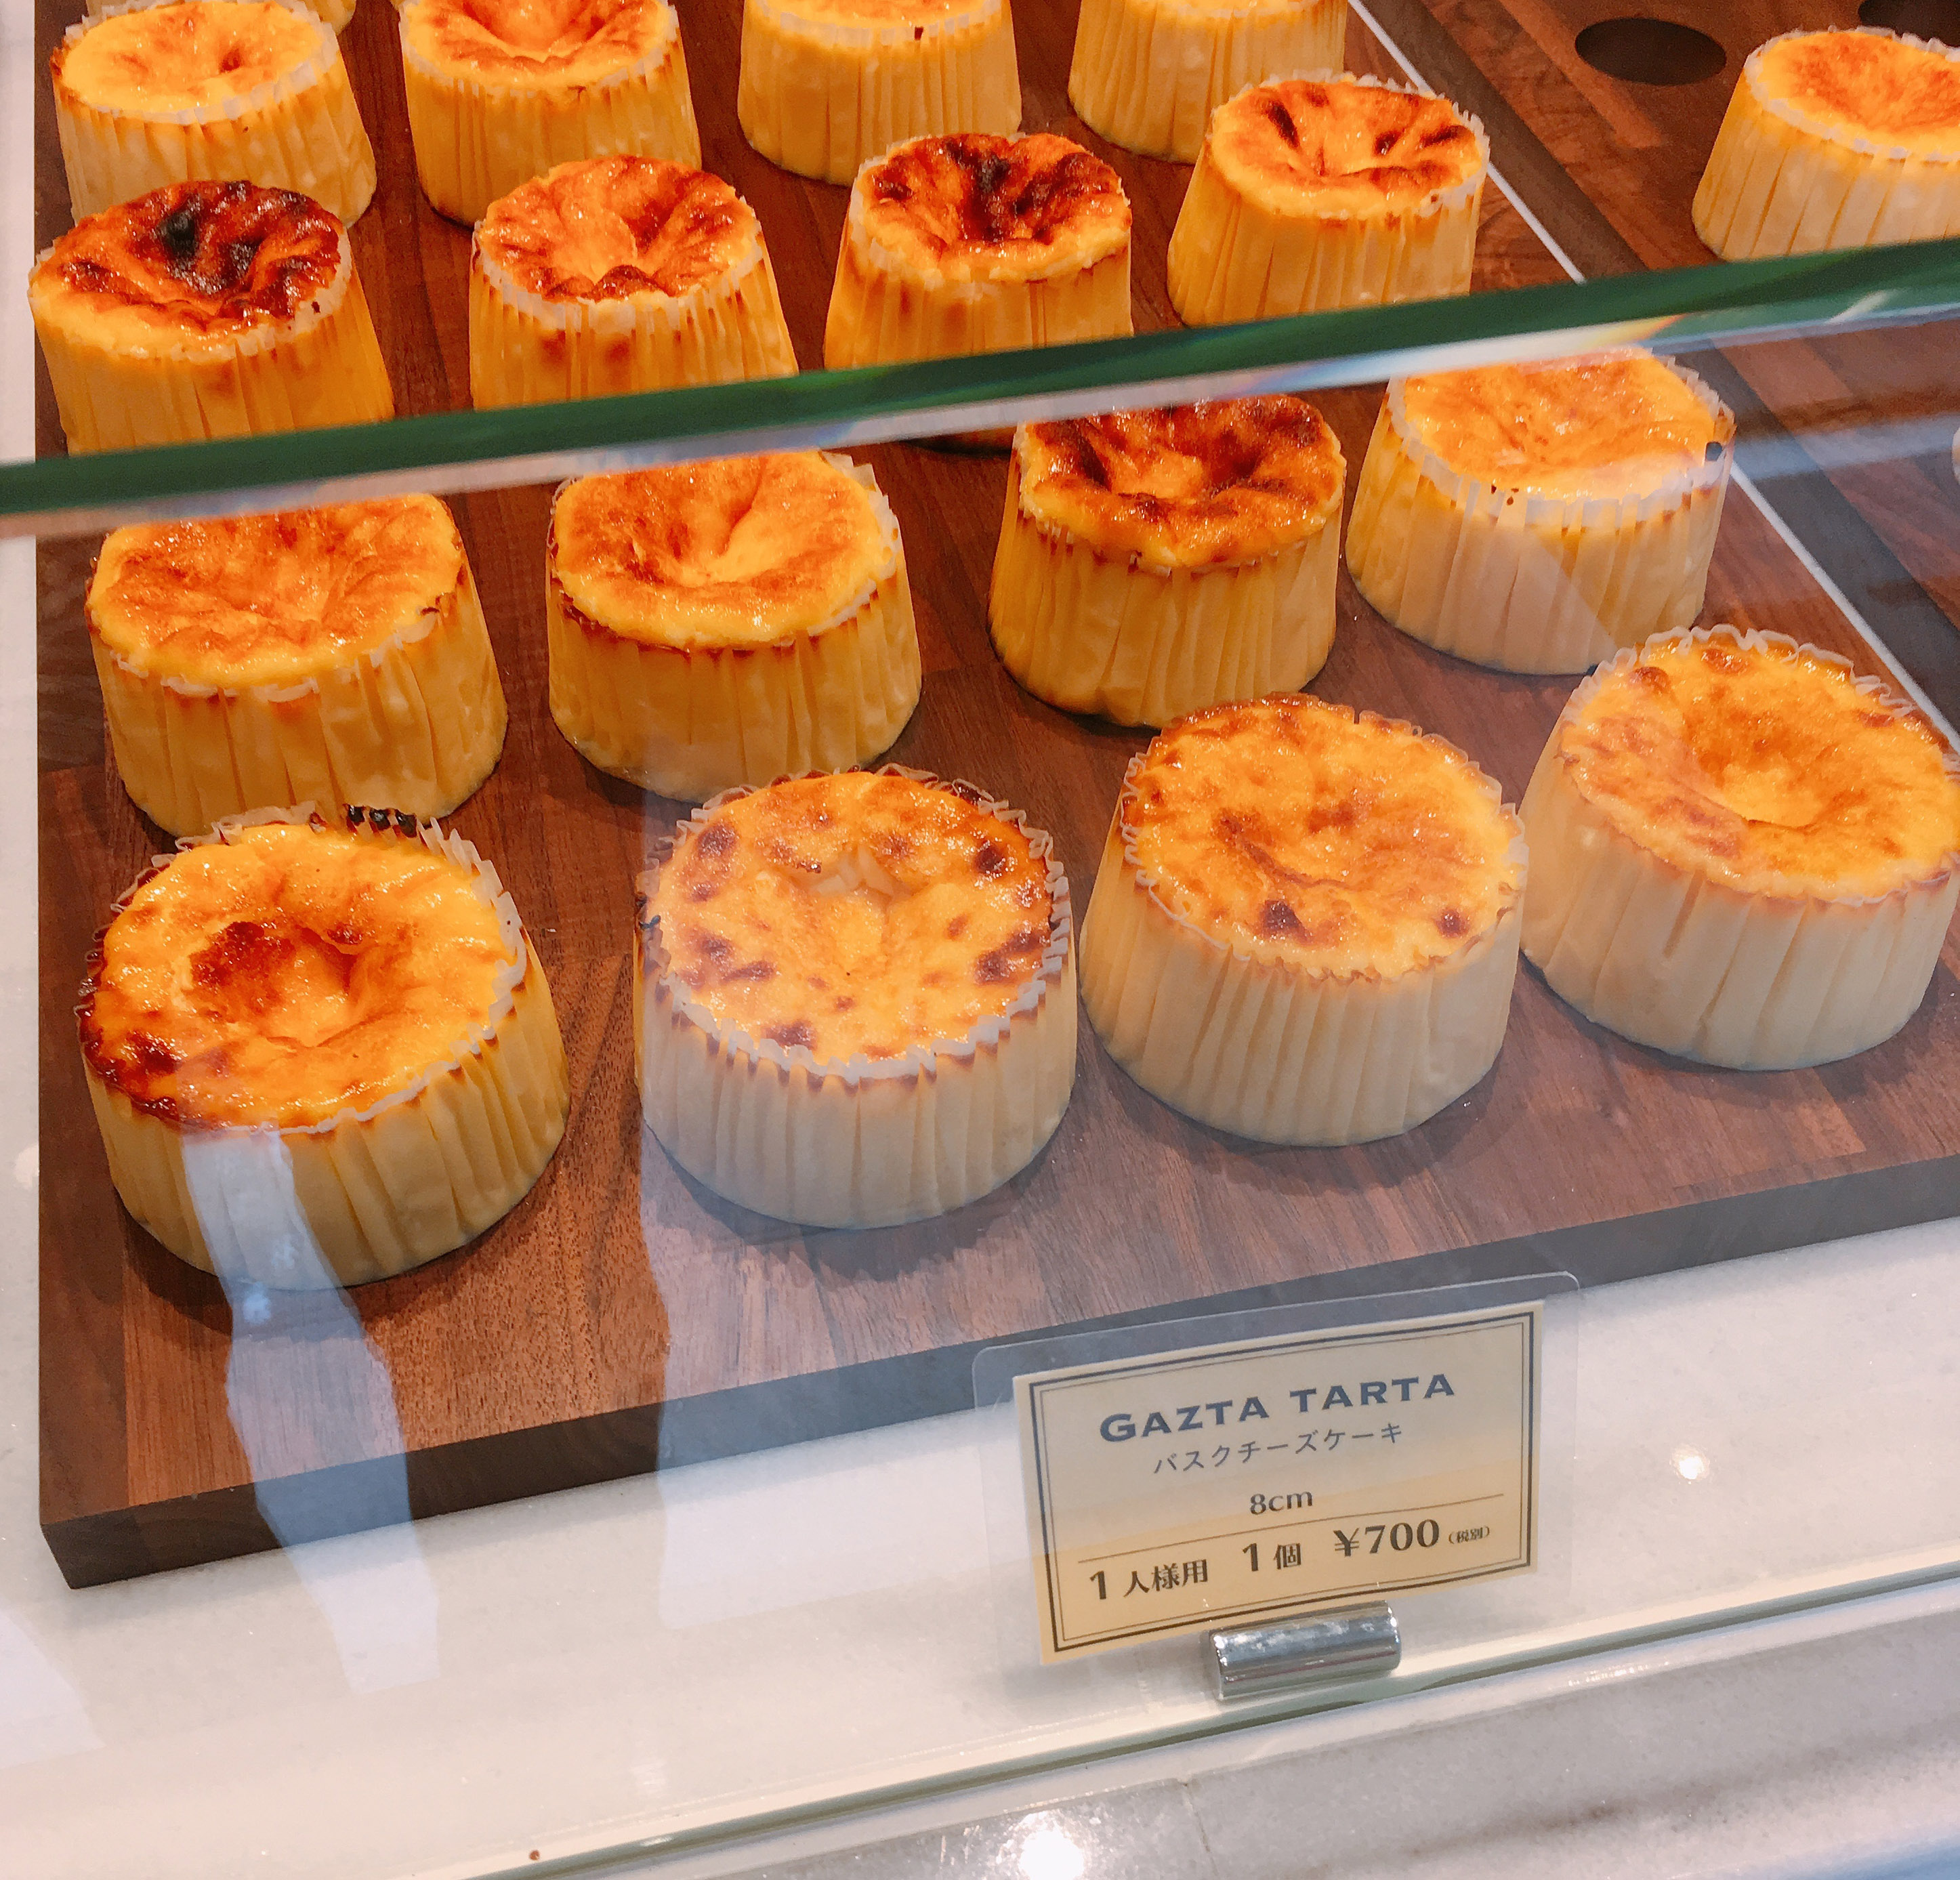 開店から1カ月も経たずにすでに人気店 Gazta のチーズケーキを食べてみた 東京 白金 ロケットニュース24